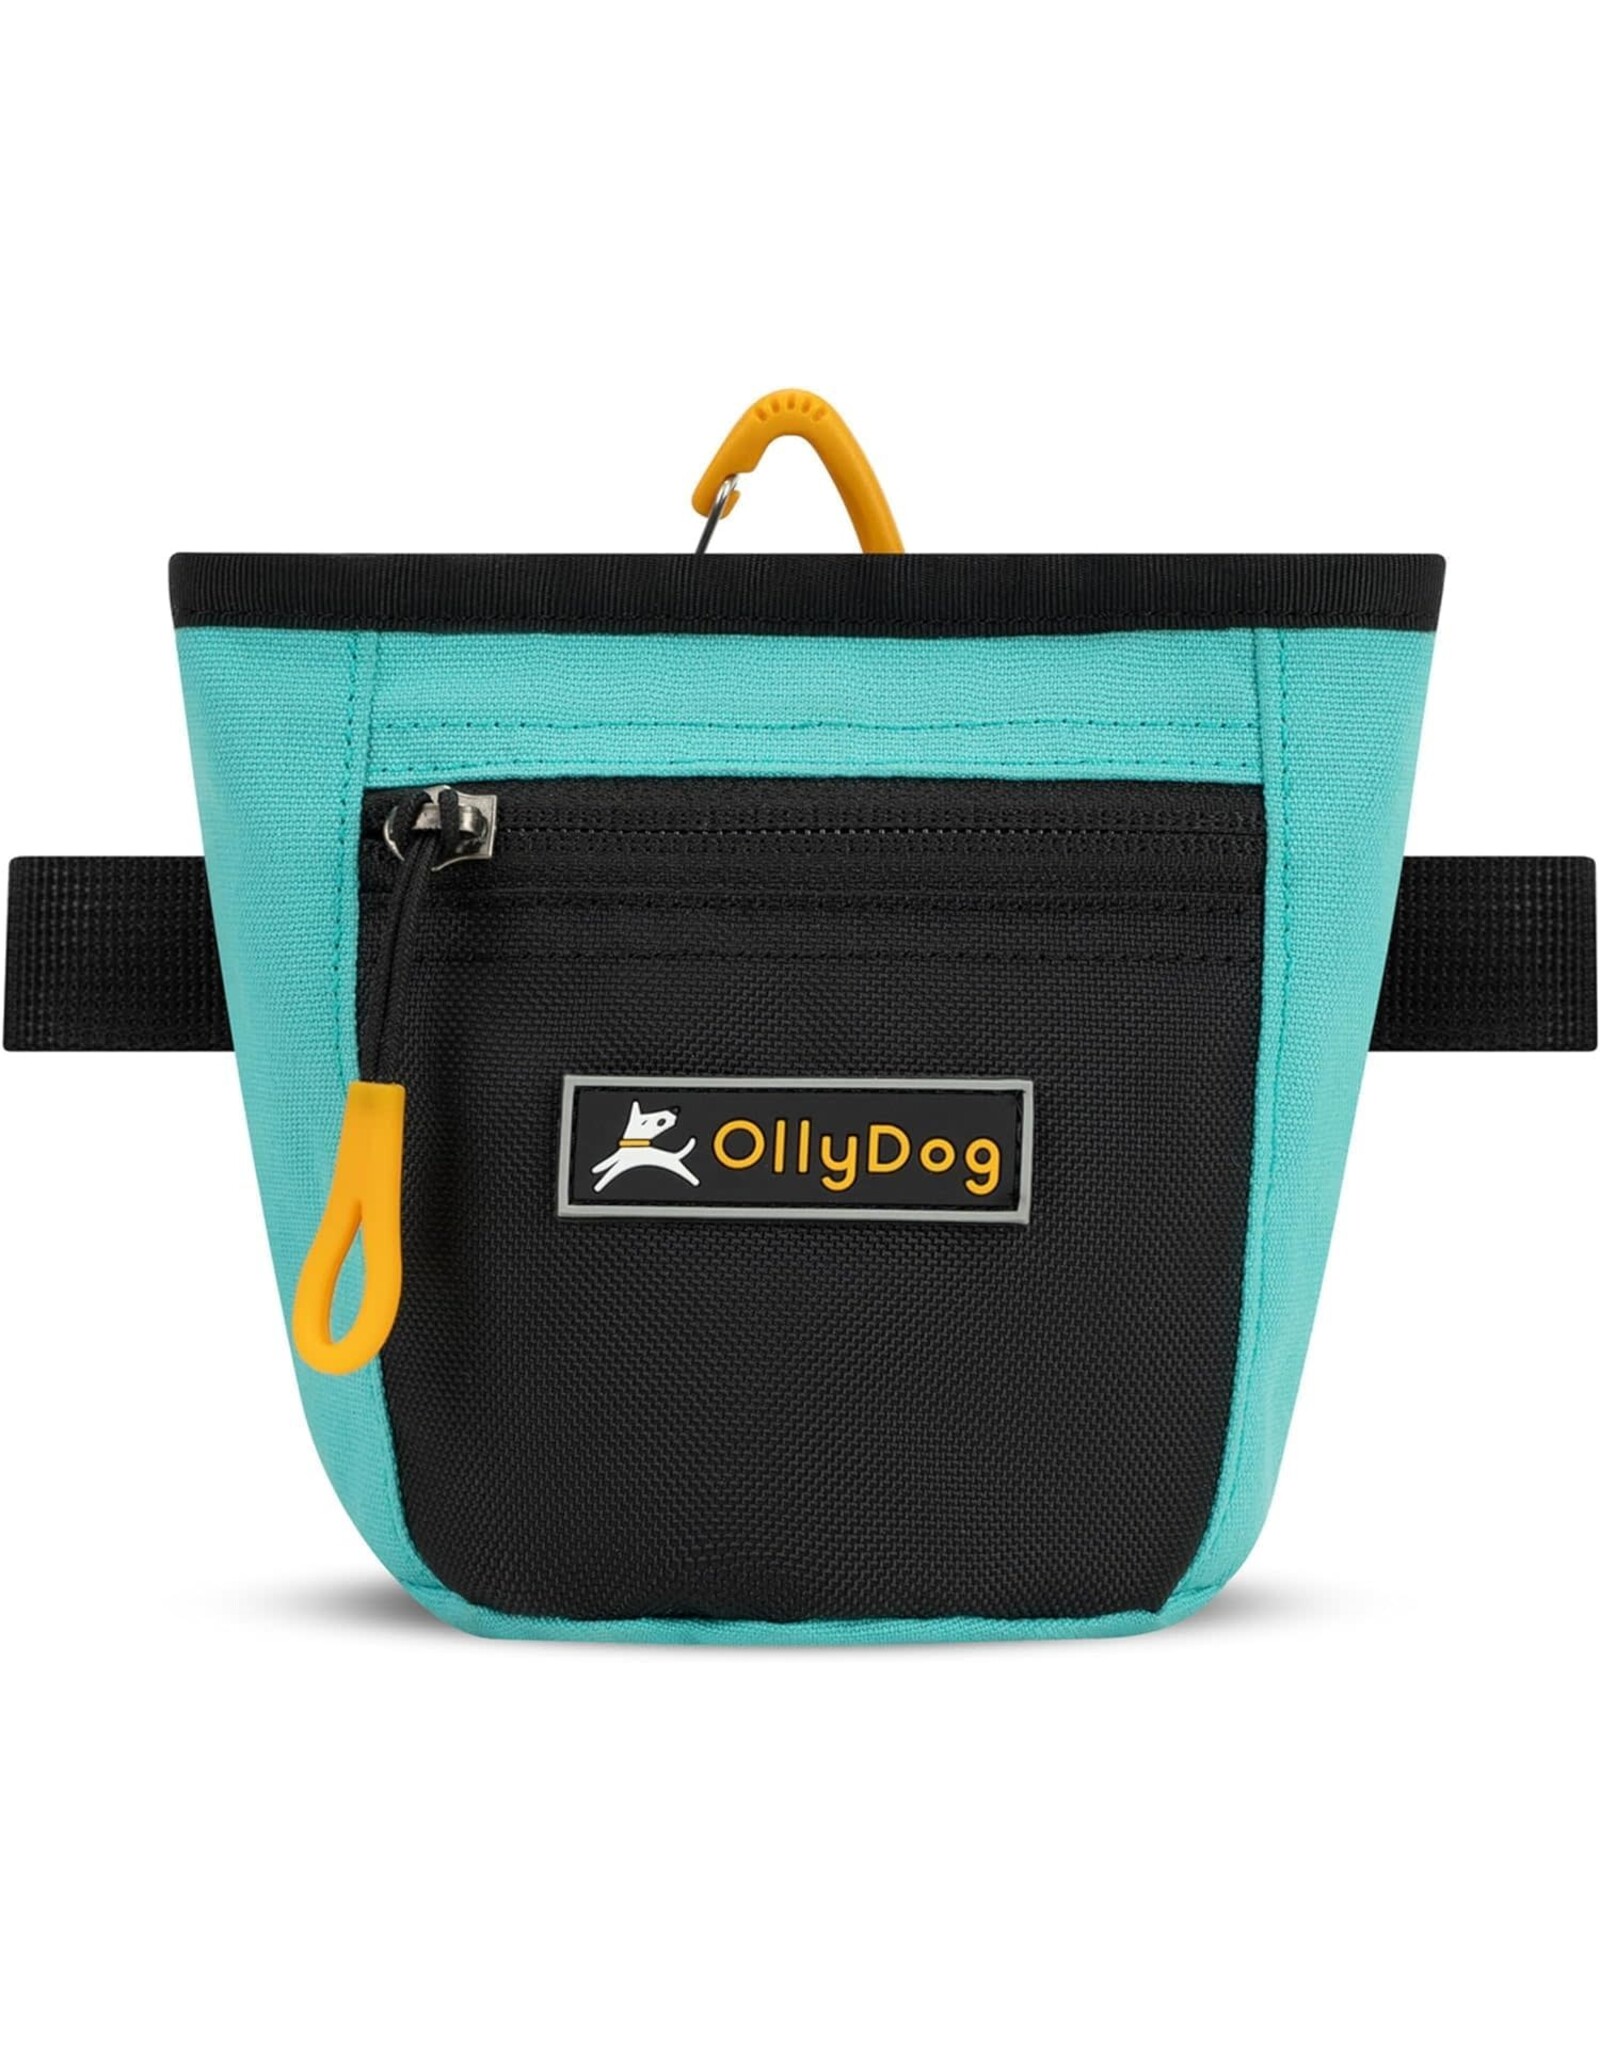 OllyDog Goodie Treat Bag: Bright Aqua, os